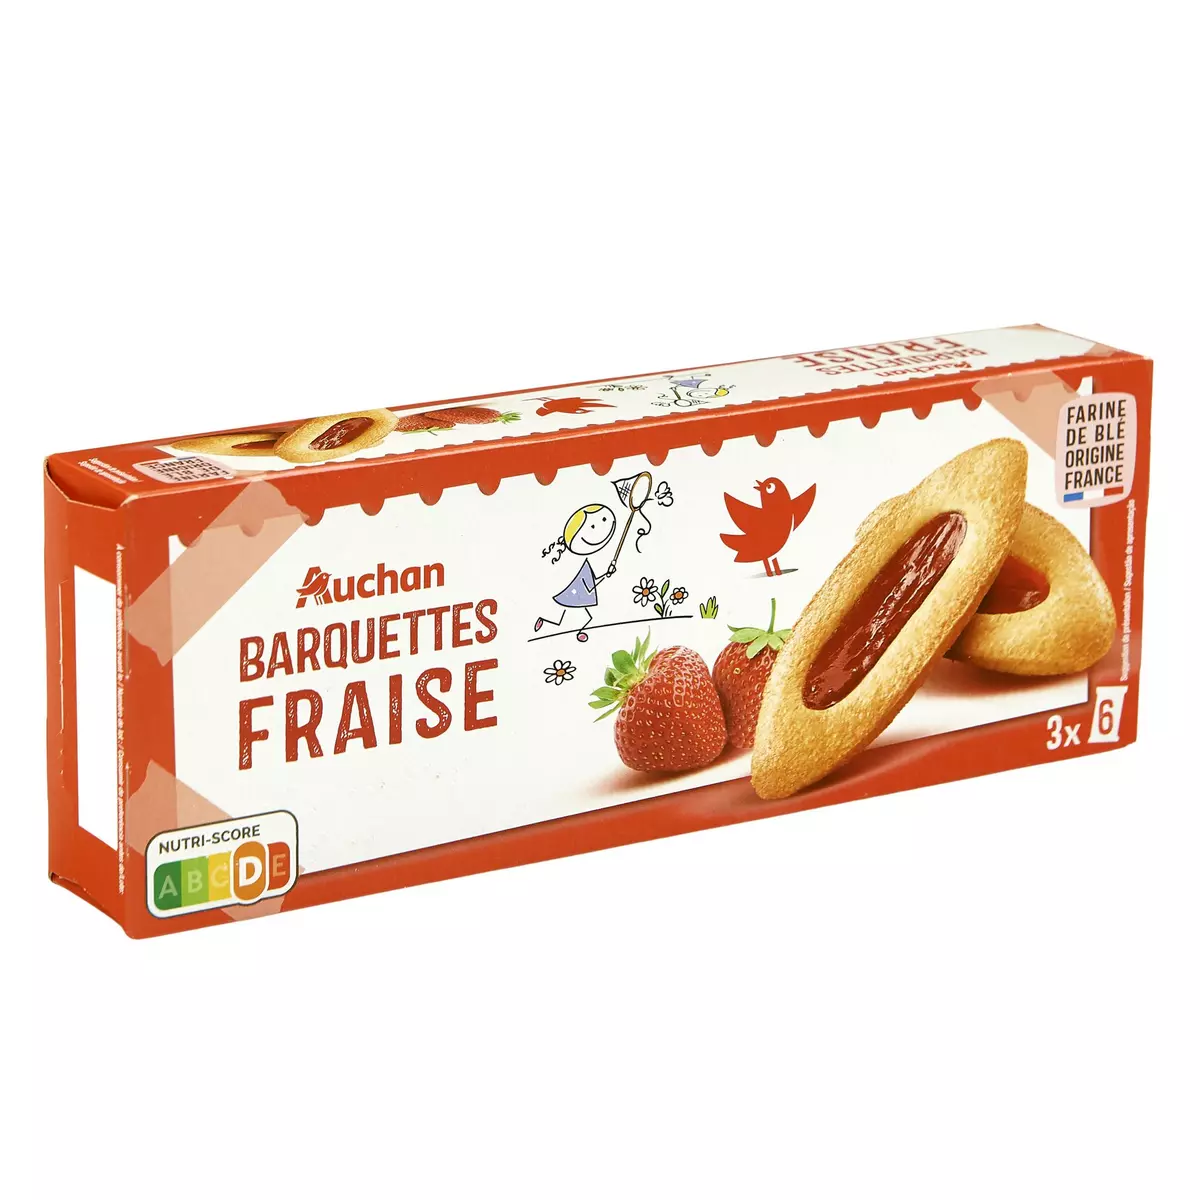 AUCHAN Barquettes à la fraise, sachets fraîcheur 3x6 biscuits 120g